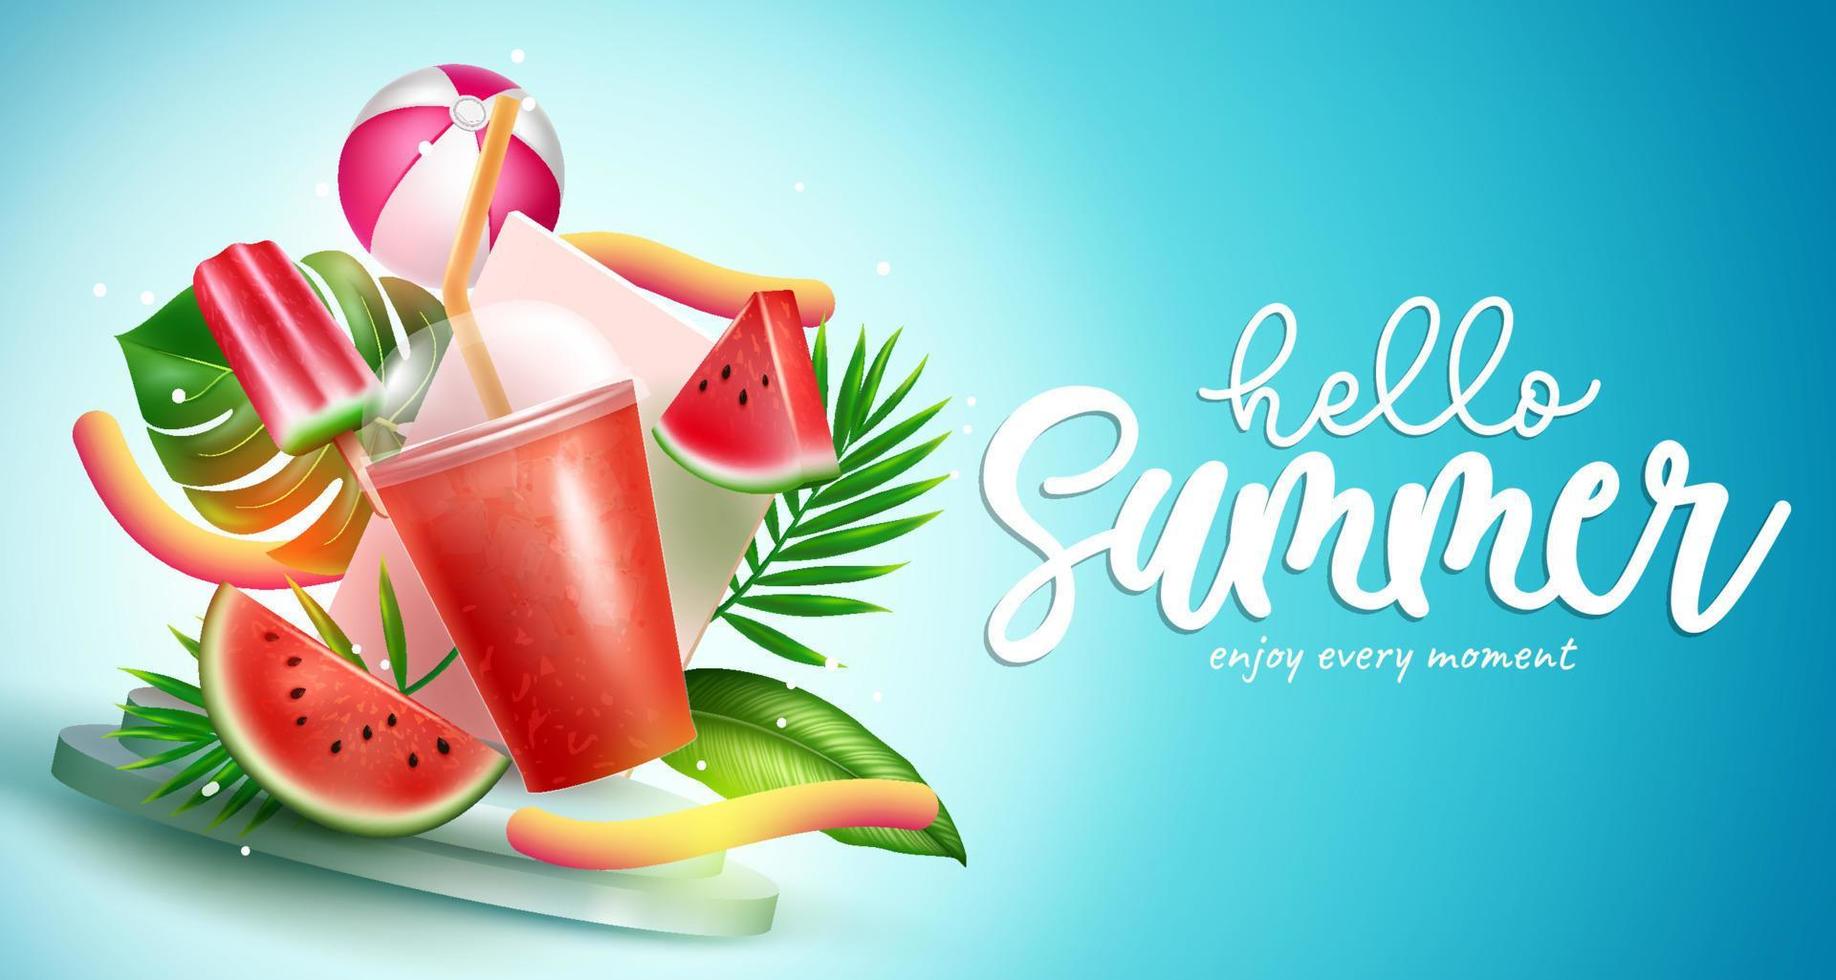 sommar säsong vektor design. Hej sommar text med frukt dryck, vattenmelon och löv uppfriskande element för tropisk säsong färsk natur kylare. vektor illustration.